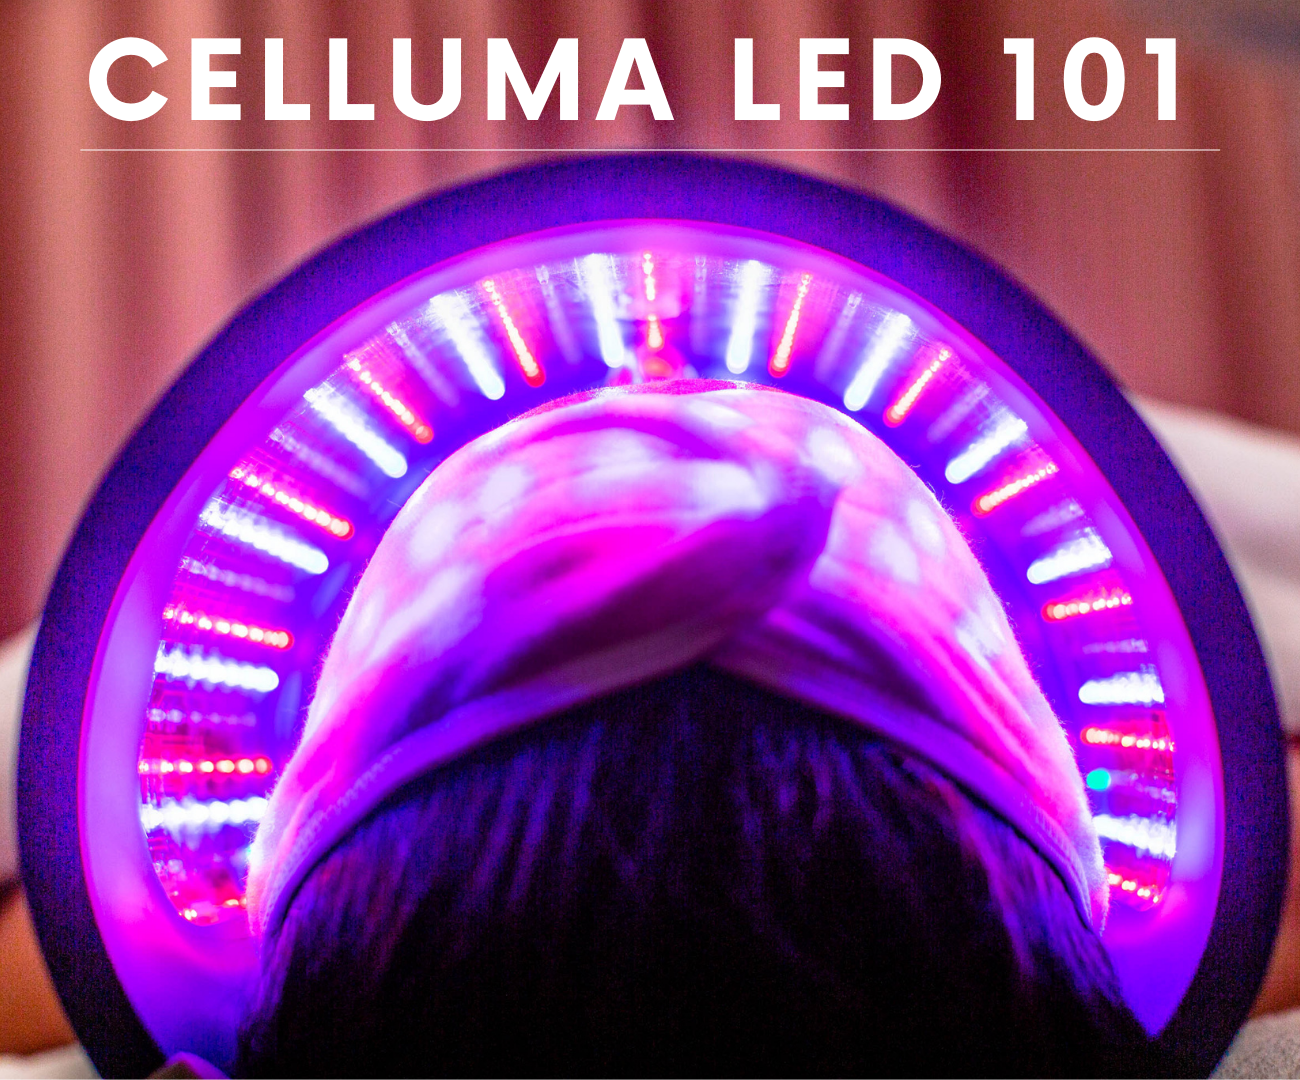 Celluma LED 101